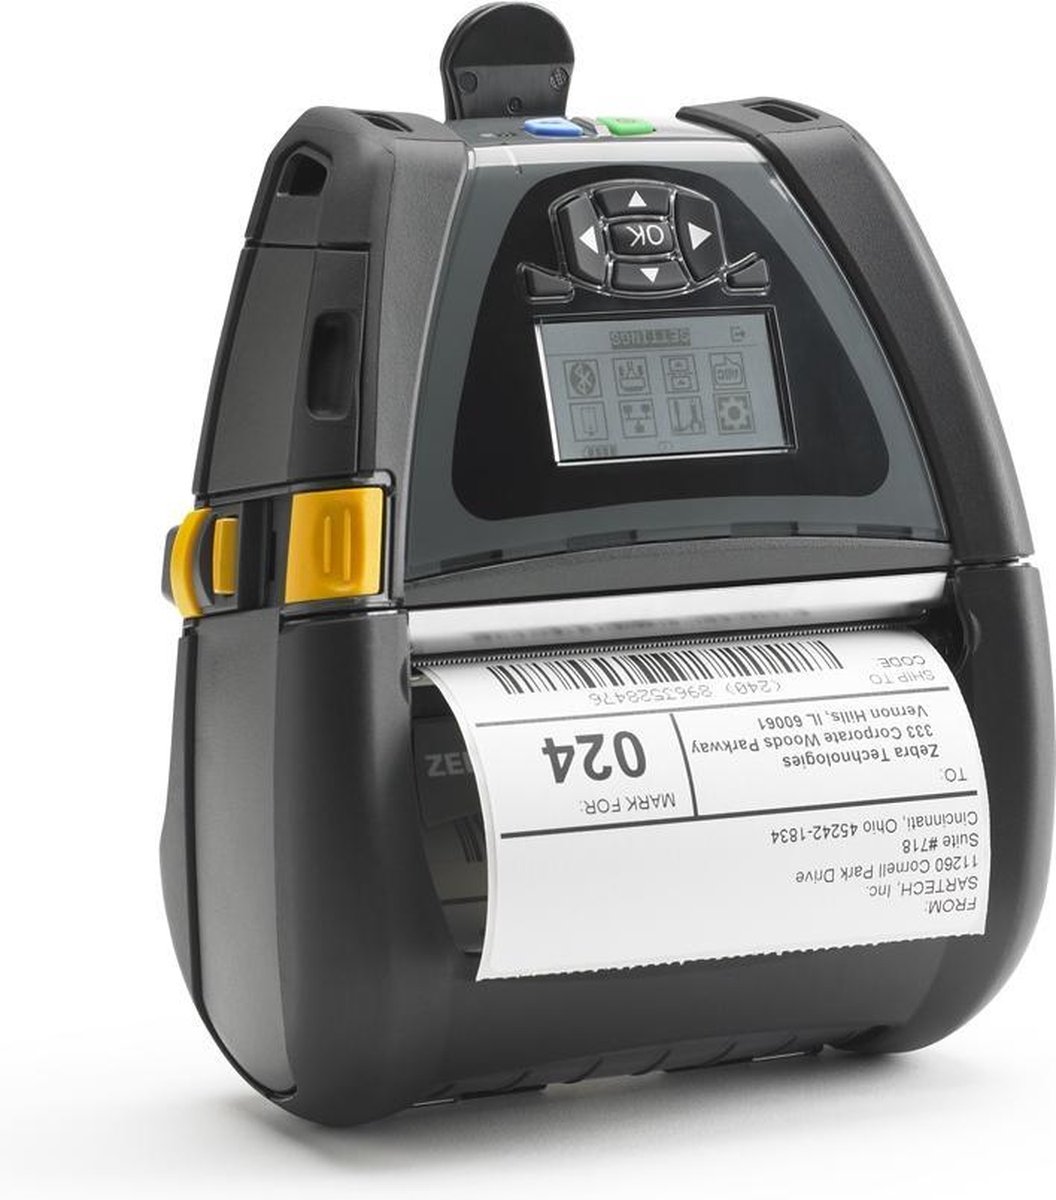 Zebra Qln420 Direct Thermisch Mobiele Printer 203 X 203dpi 2174